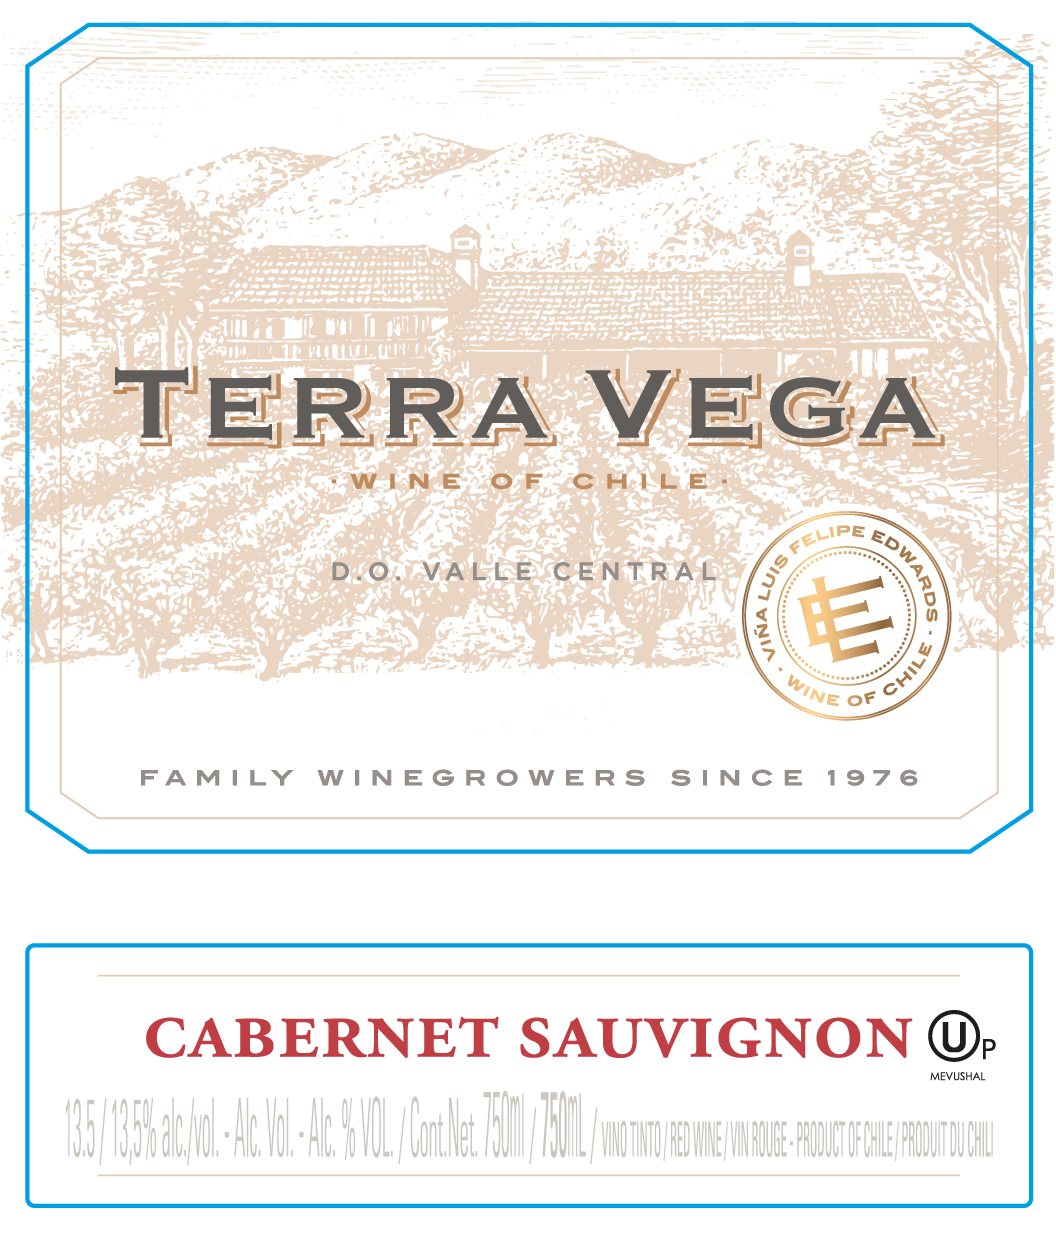 Terra Vega - Cabernet Sauvignon label